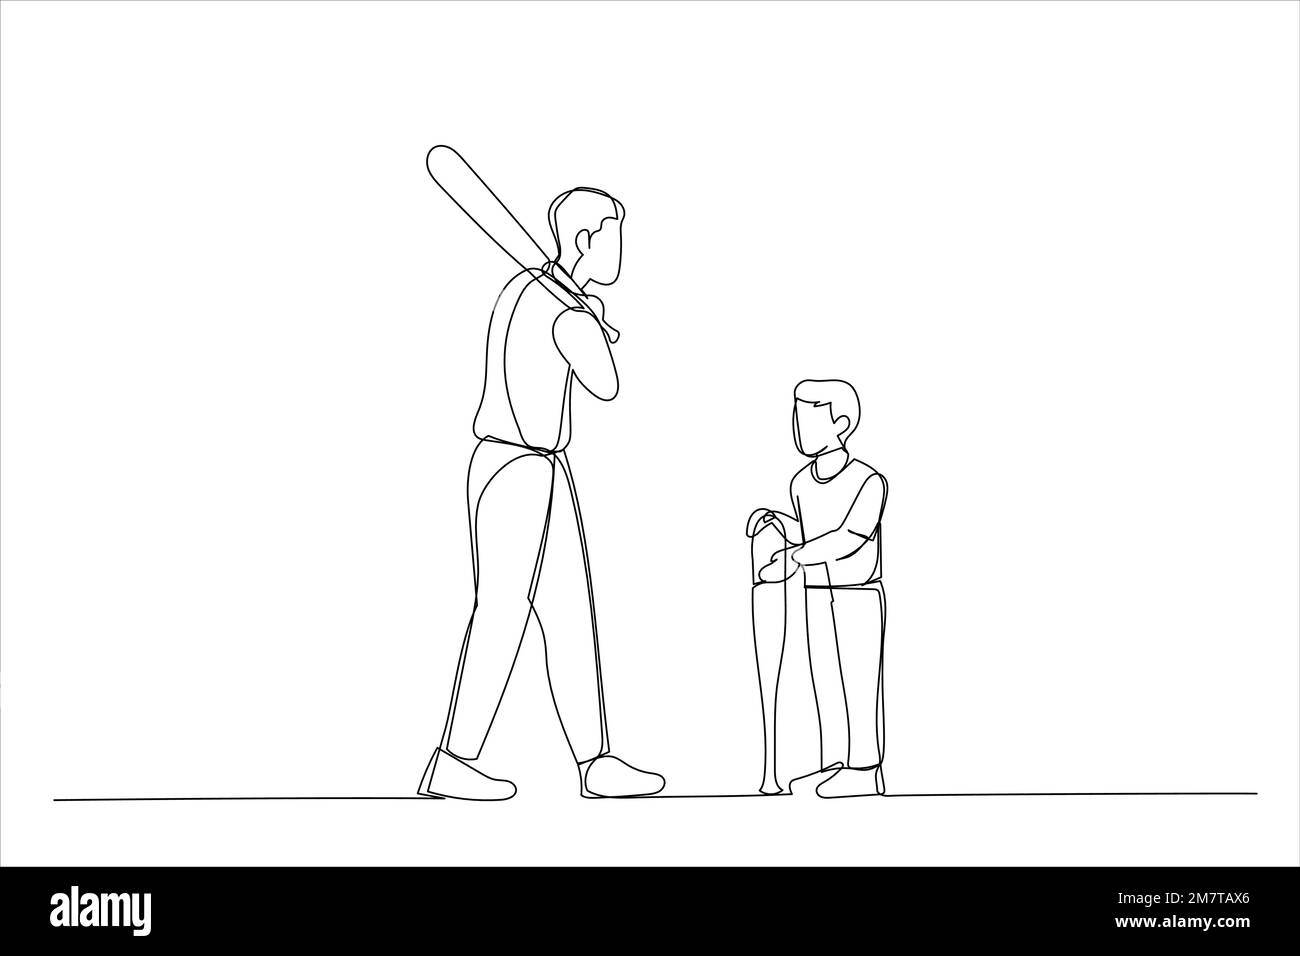 Cartone animato di padre che insegna a suo figlio come giocare a baseball. Stile artistico a linea continua singola Illustrazione Vettoriale